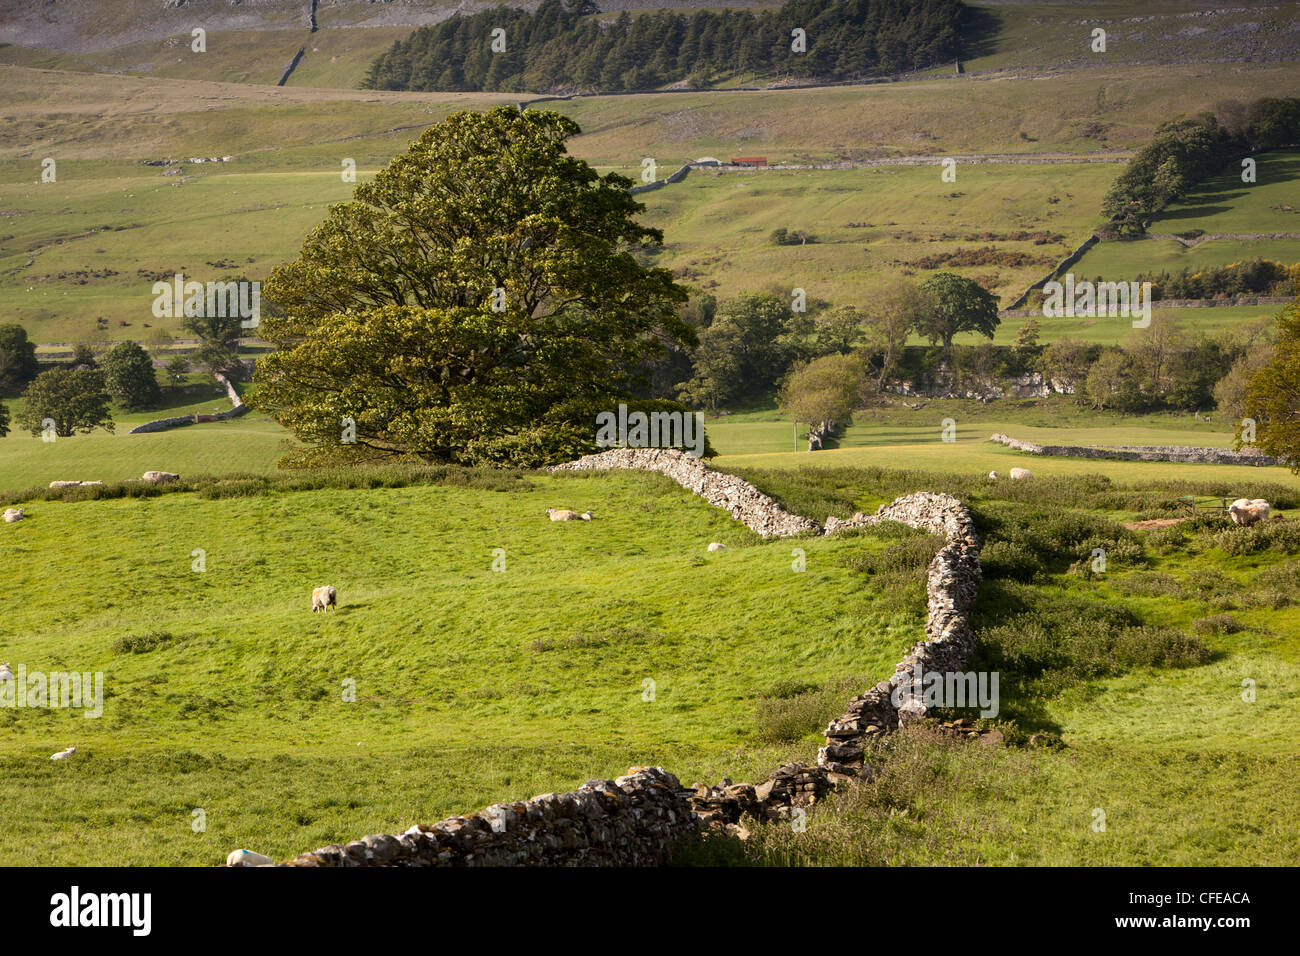 Royaume-uni, Angleterre, dans le Yorkshire, Wensleydale, de l'agriculture, les moutons paissant sur des terres agricoles luxuriantes dales divisé par des murs en pierre sèche Banque D'Images